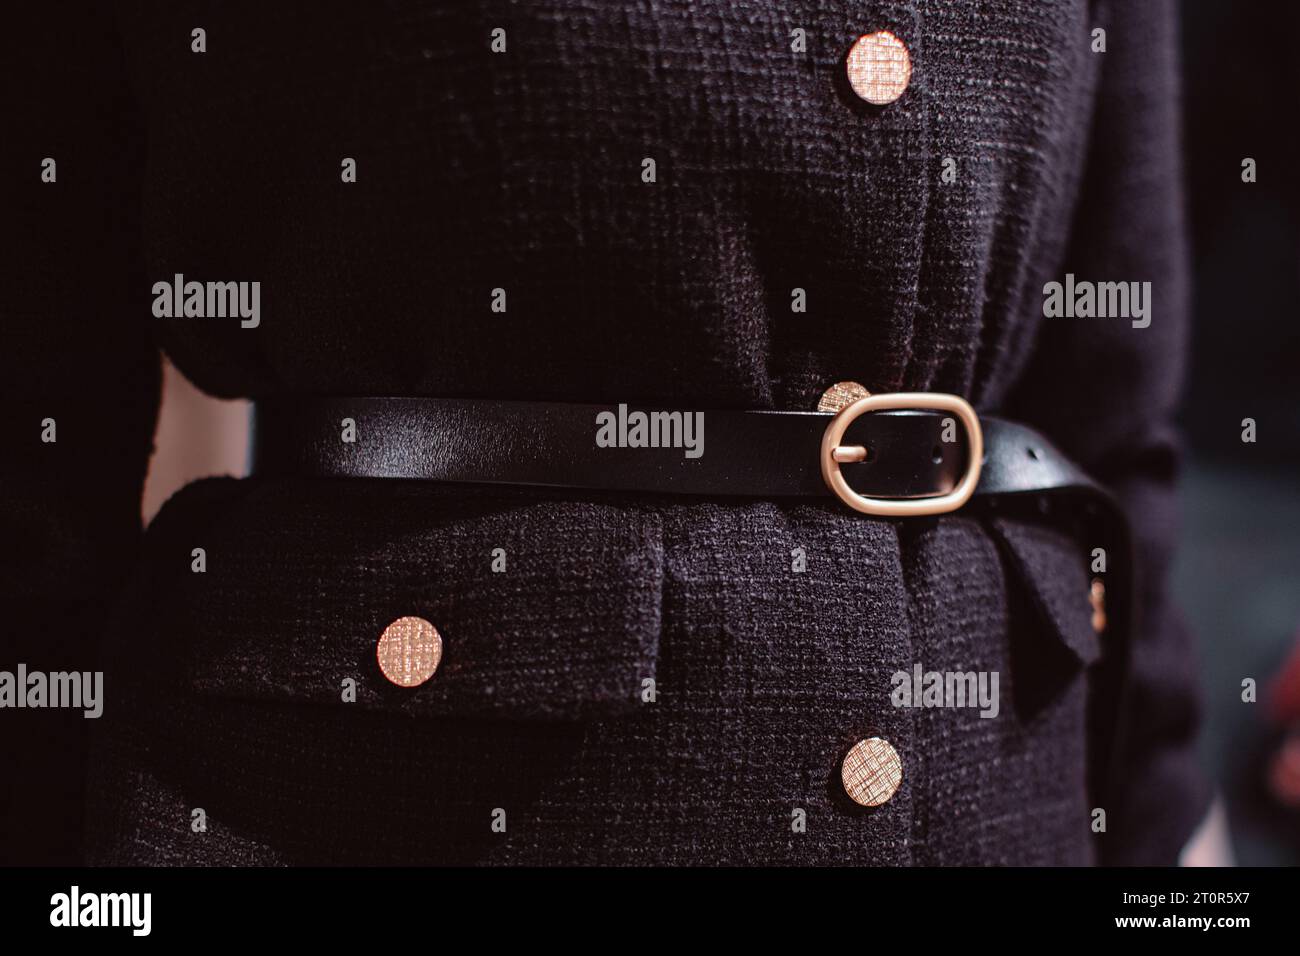 Détails de mode d'une veste noire élégante, ceinture en cuir et boutons dorés. Banque D'Images